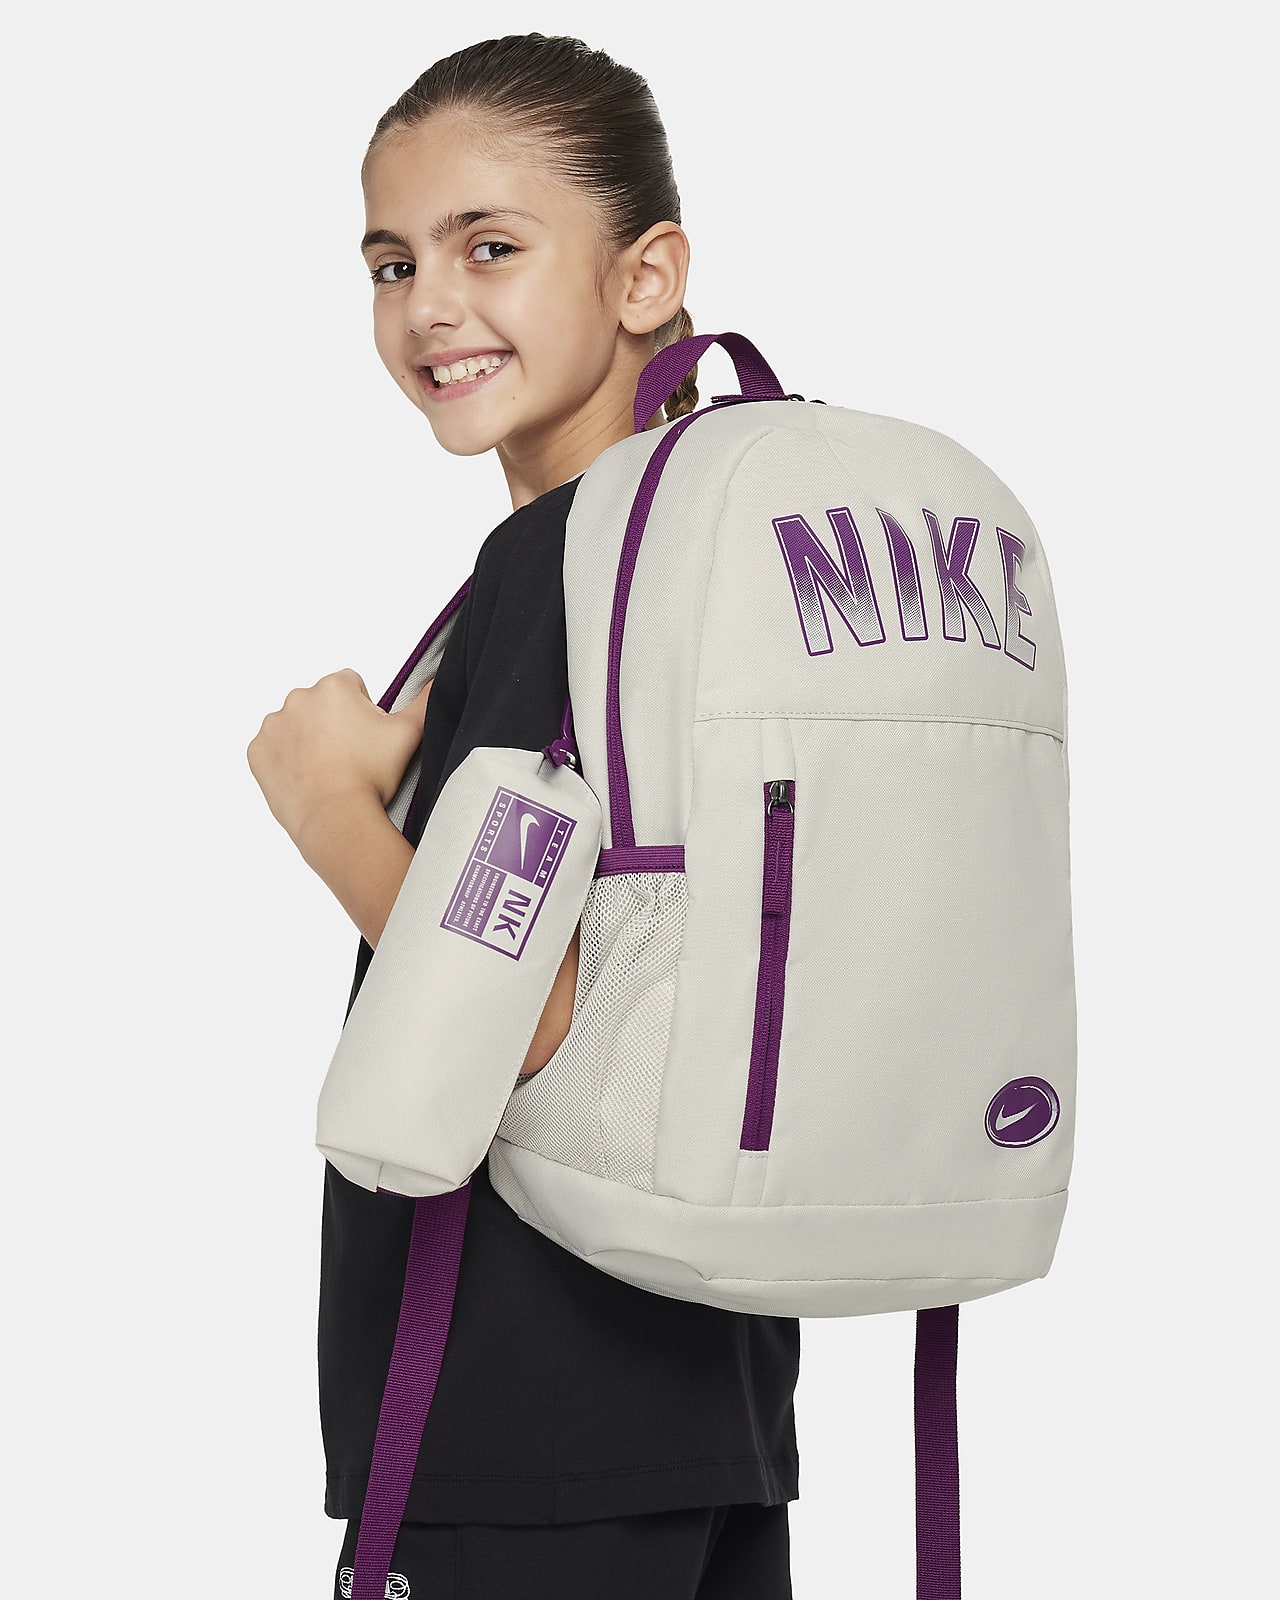 Mochila Nike para criança (20 L)